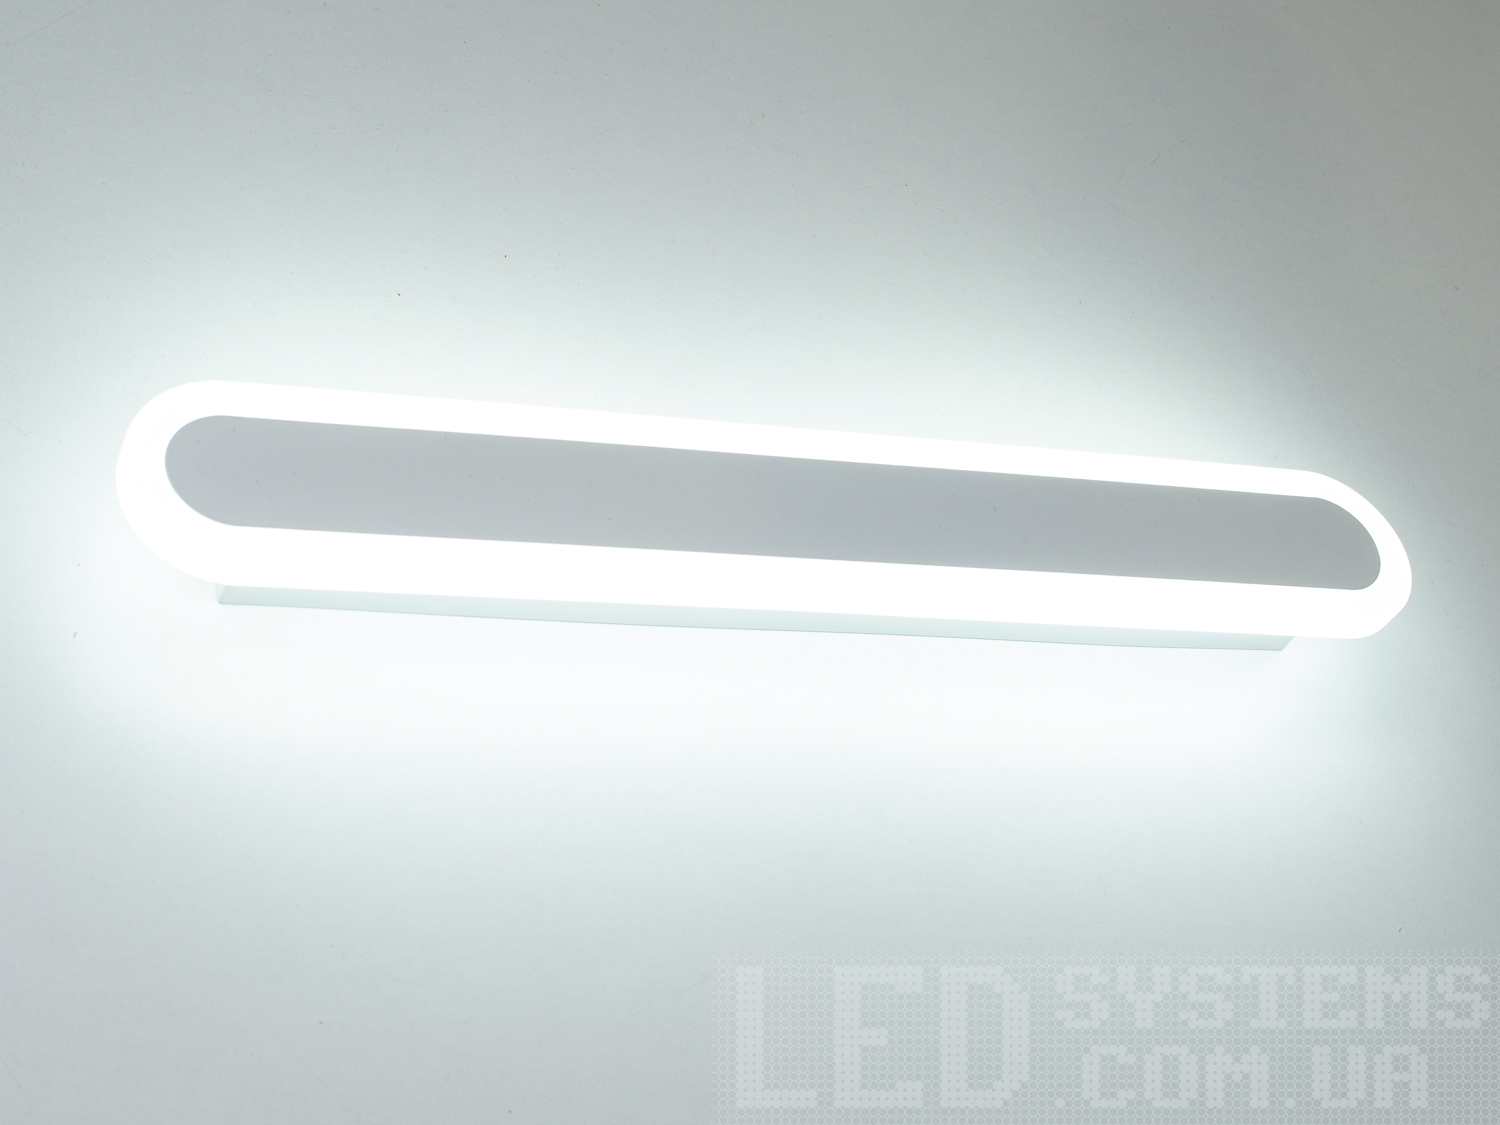 Світлодіодний світильник з підсвічуванням з незвичайним виконання плафонів, що обрамляють LED лампи. LED світильник є ідеальним рішенням для акцентного (елементного) підсвічування в інтер'єрі - підсвічування дзеркал, картин, стінних ніш, особливих деталей інтер'єру і є не просто утилітарним світильником як звичайне лінійне підсвічування. Світильник має унікальні світлодіодні енергозберігаючі лампи. Які при дуже низькій споживаній потужності створюють потужний світловий потік. Витончені накладні світлодіодні світильники призначені для створення яскравого світлодіодного освітлення з регульованою температурою кольору від теплого білого до холодного білого. Перемикання спектрів світіння світлодіодного світильника здійснюється простим вимкненням-вмиканням. Кріпиться до будь-яких видів поверхонь універсальним кріпленням-на планку.